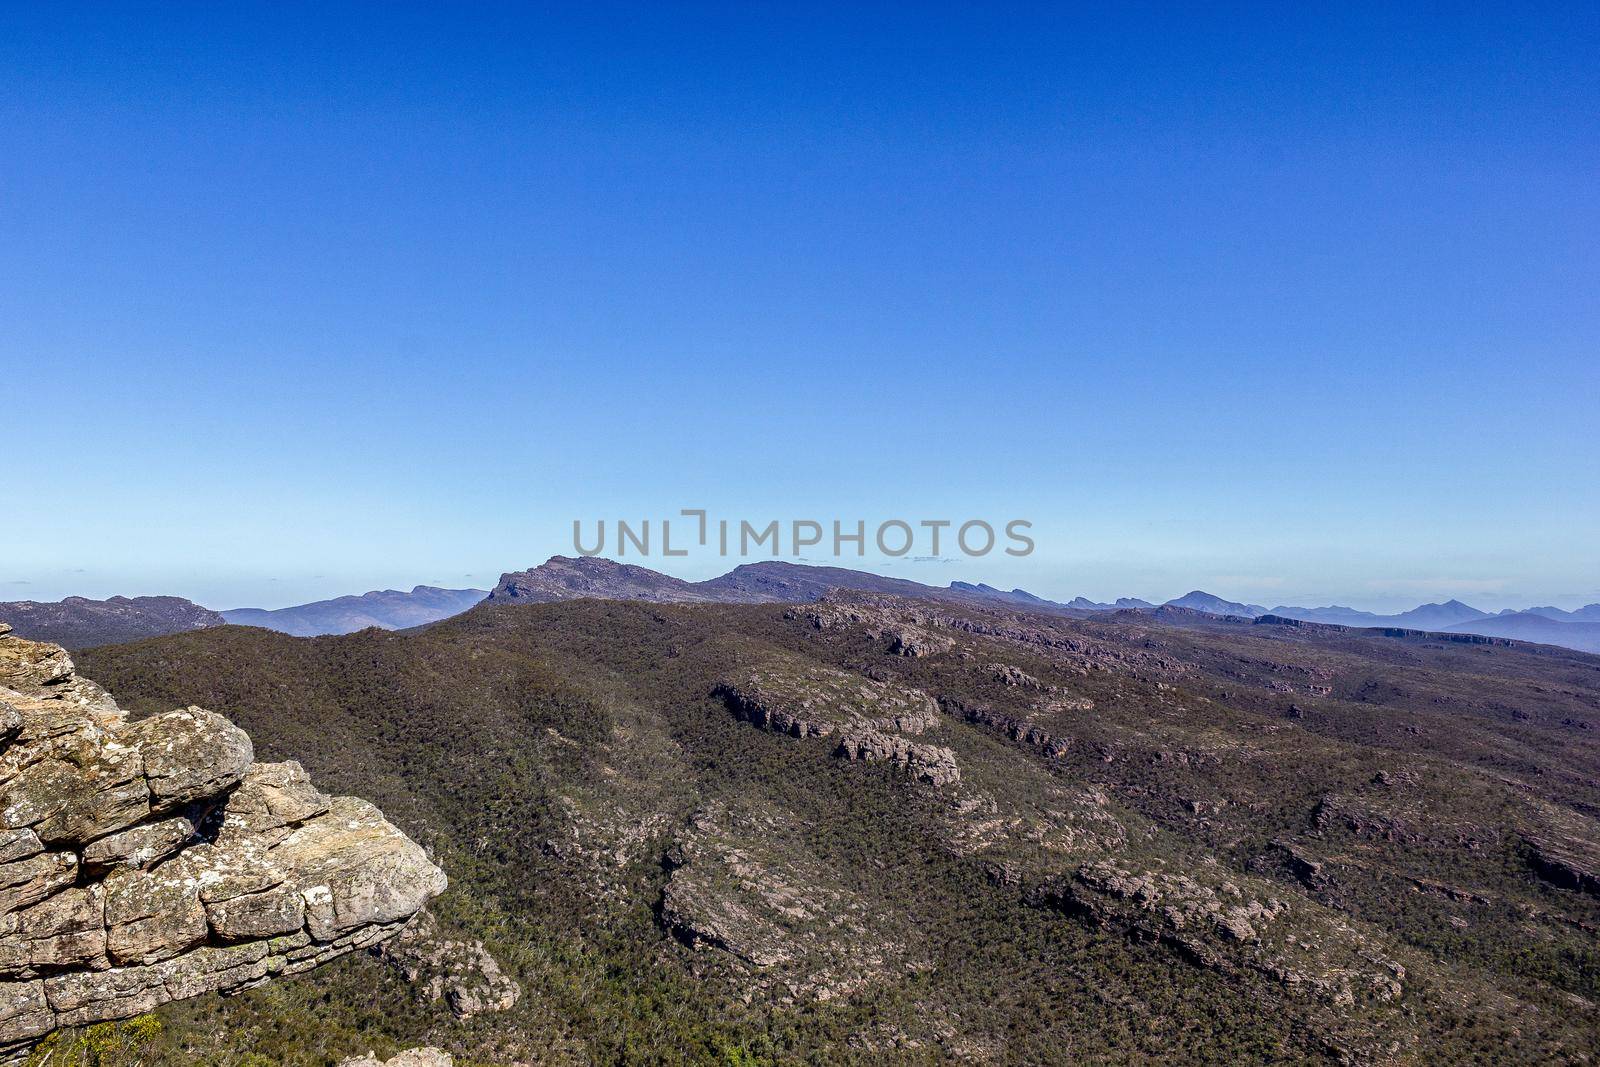 Reed Lookout, die Balkone und die umliegenden Hügel bei den Grampians im Halls Gap Valley im Westen von Victoria, Australien.